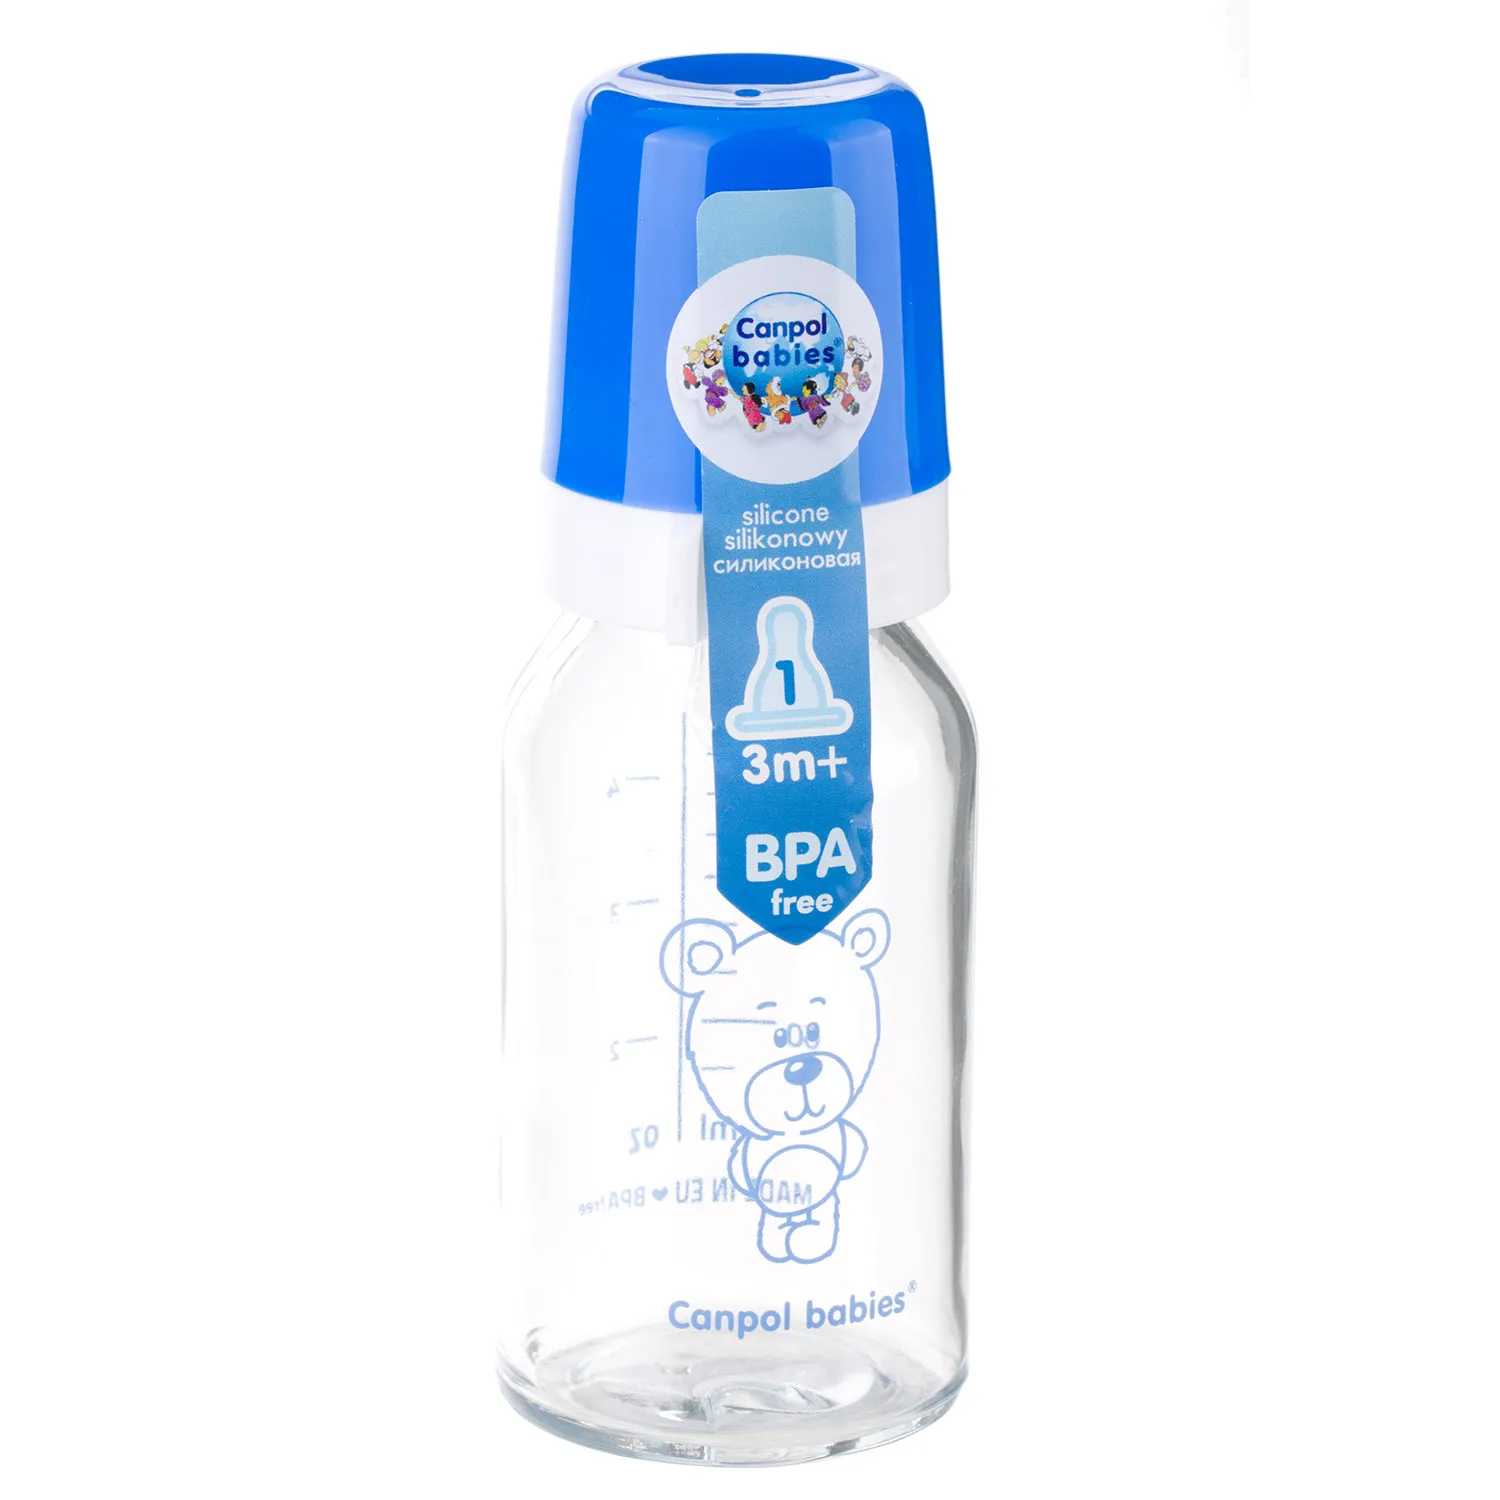 Canpol Babies, butelka szklana ze smoczkiem, rozmiar 1, wolny przepływ, 3-6 miesiąca 42/102, 120 ml